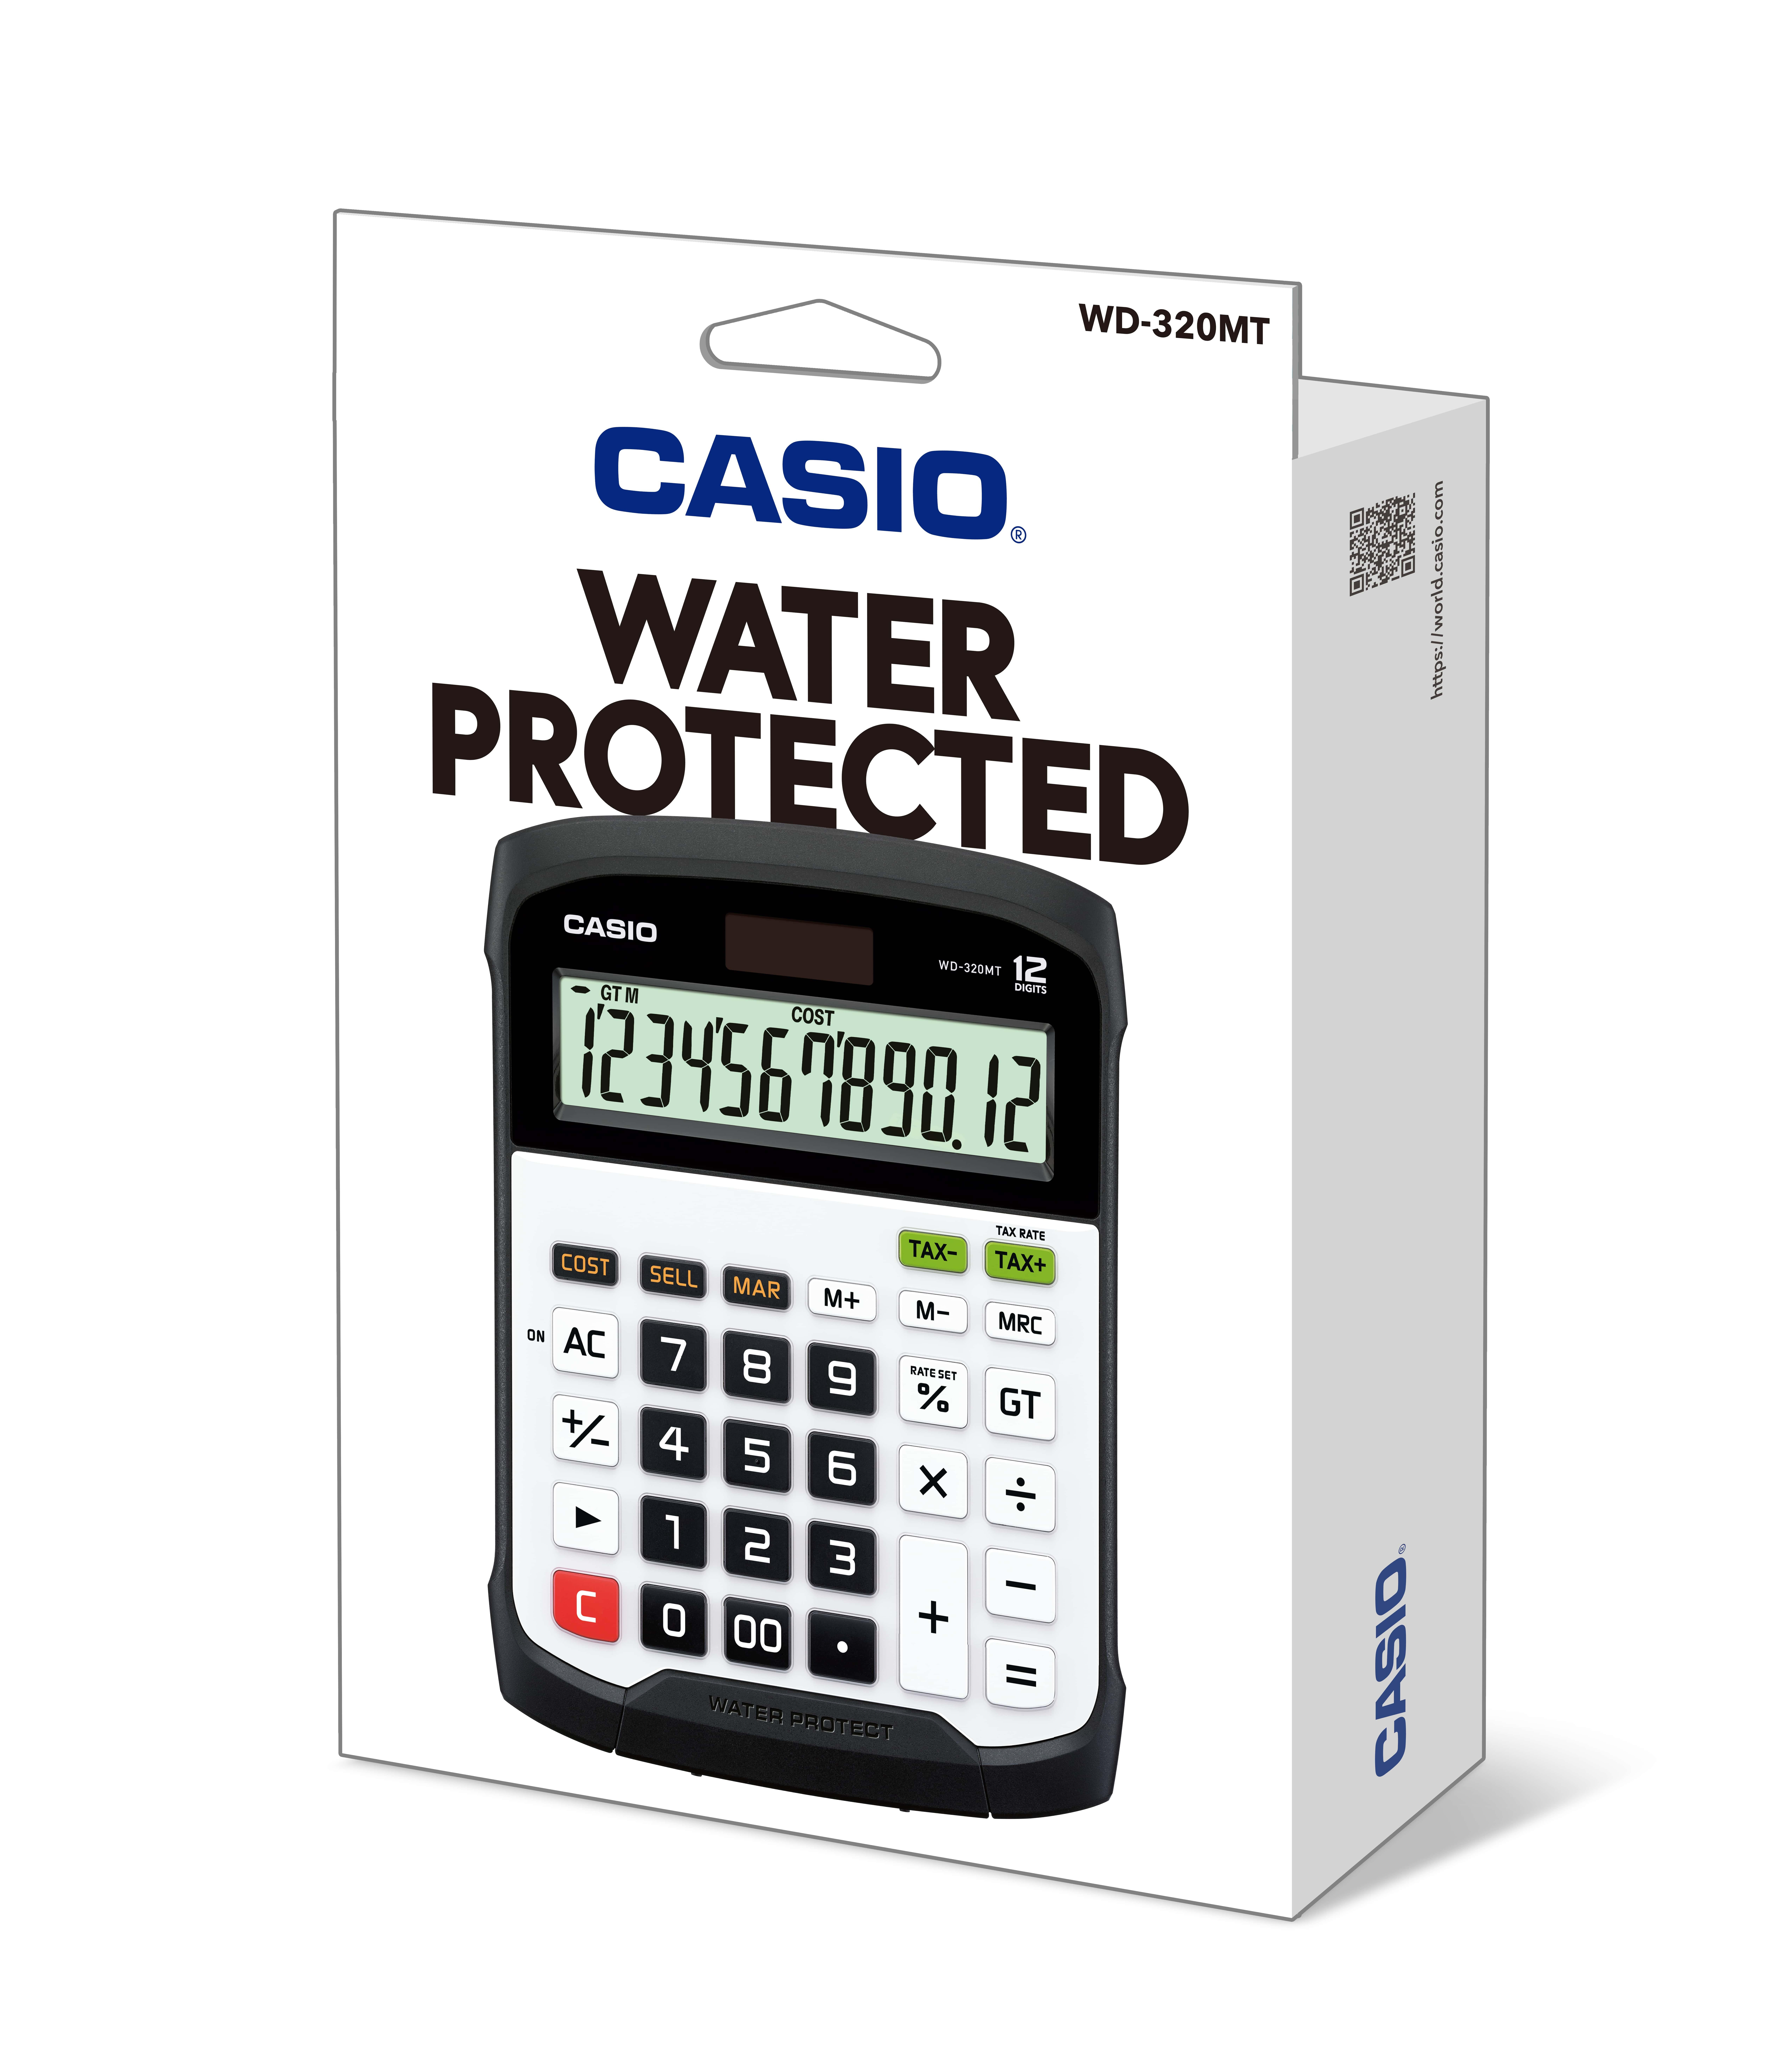 Casio WD-320MT kalkulators